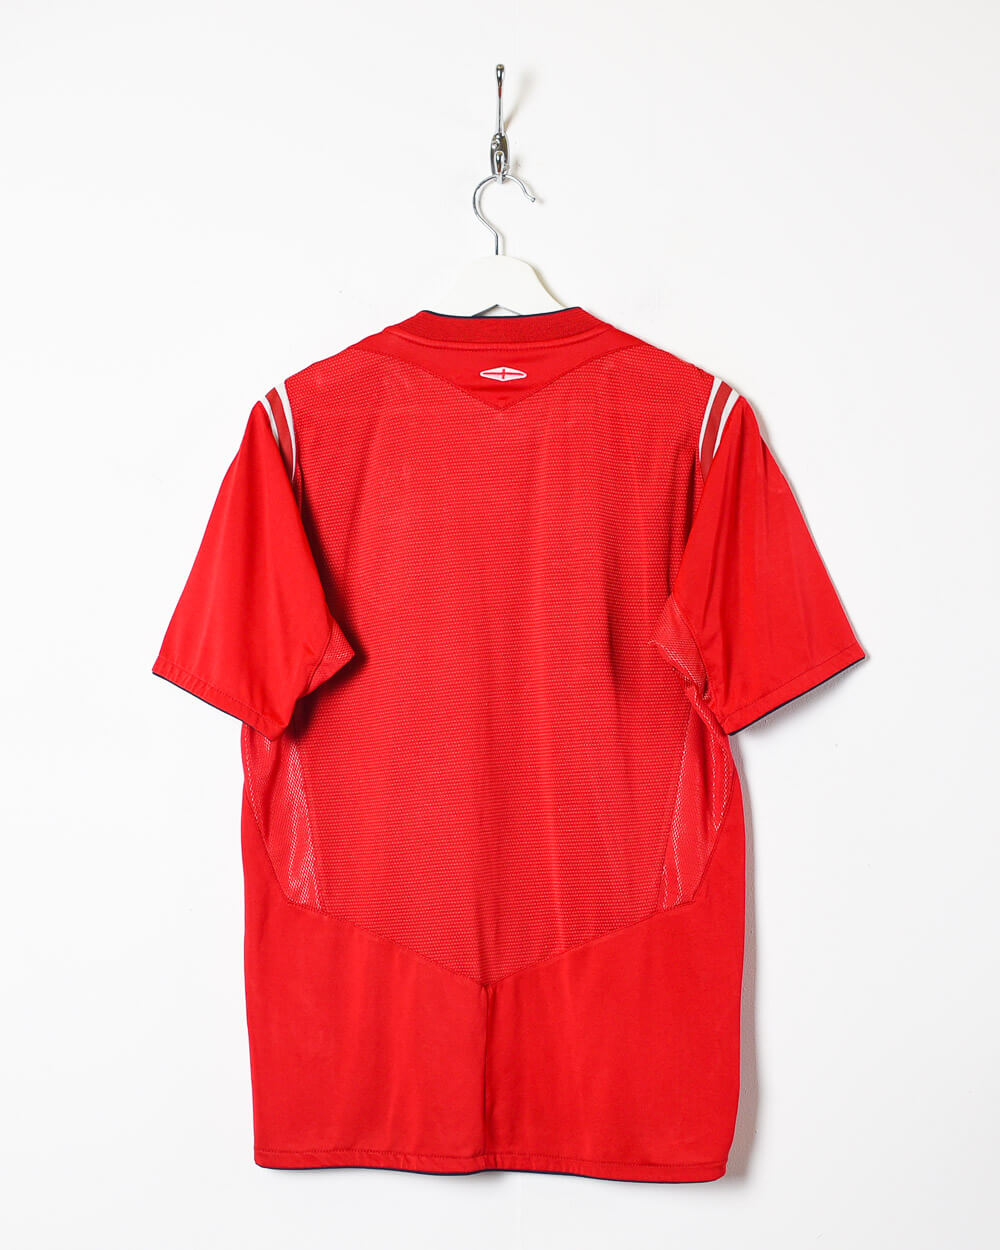 Red Umbro 2004 England Away Shirt - Medium